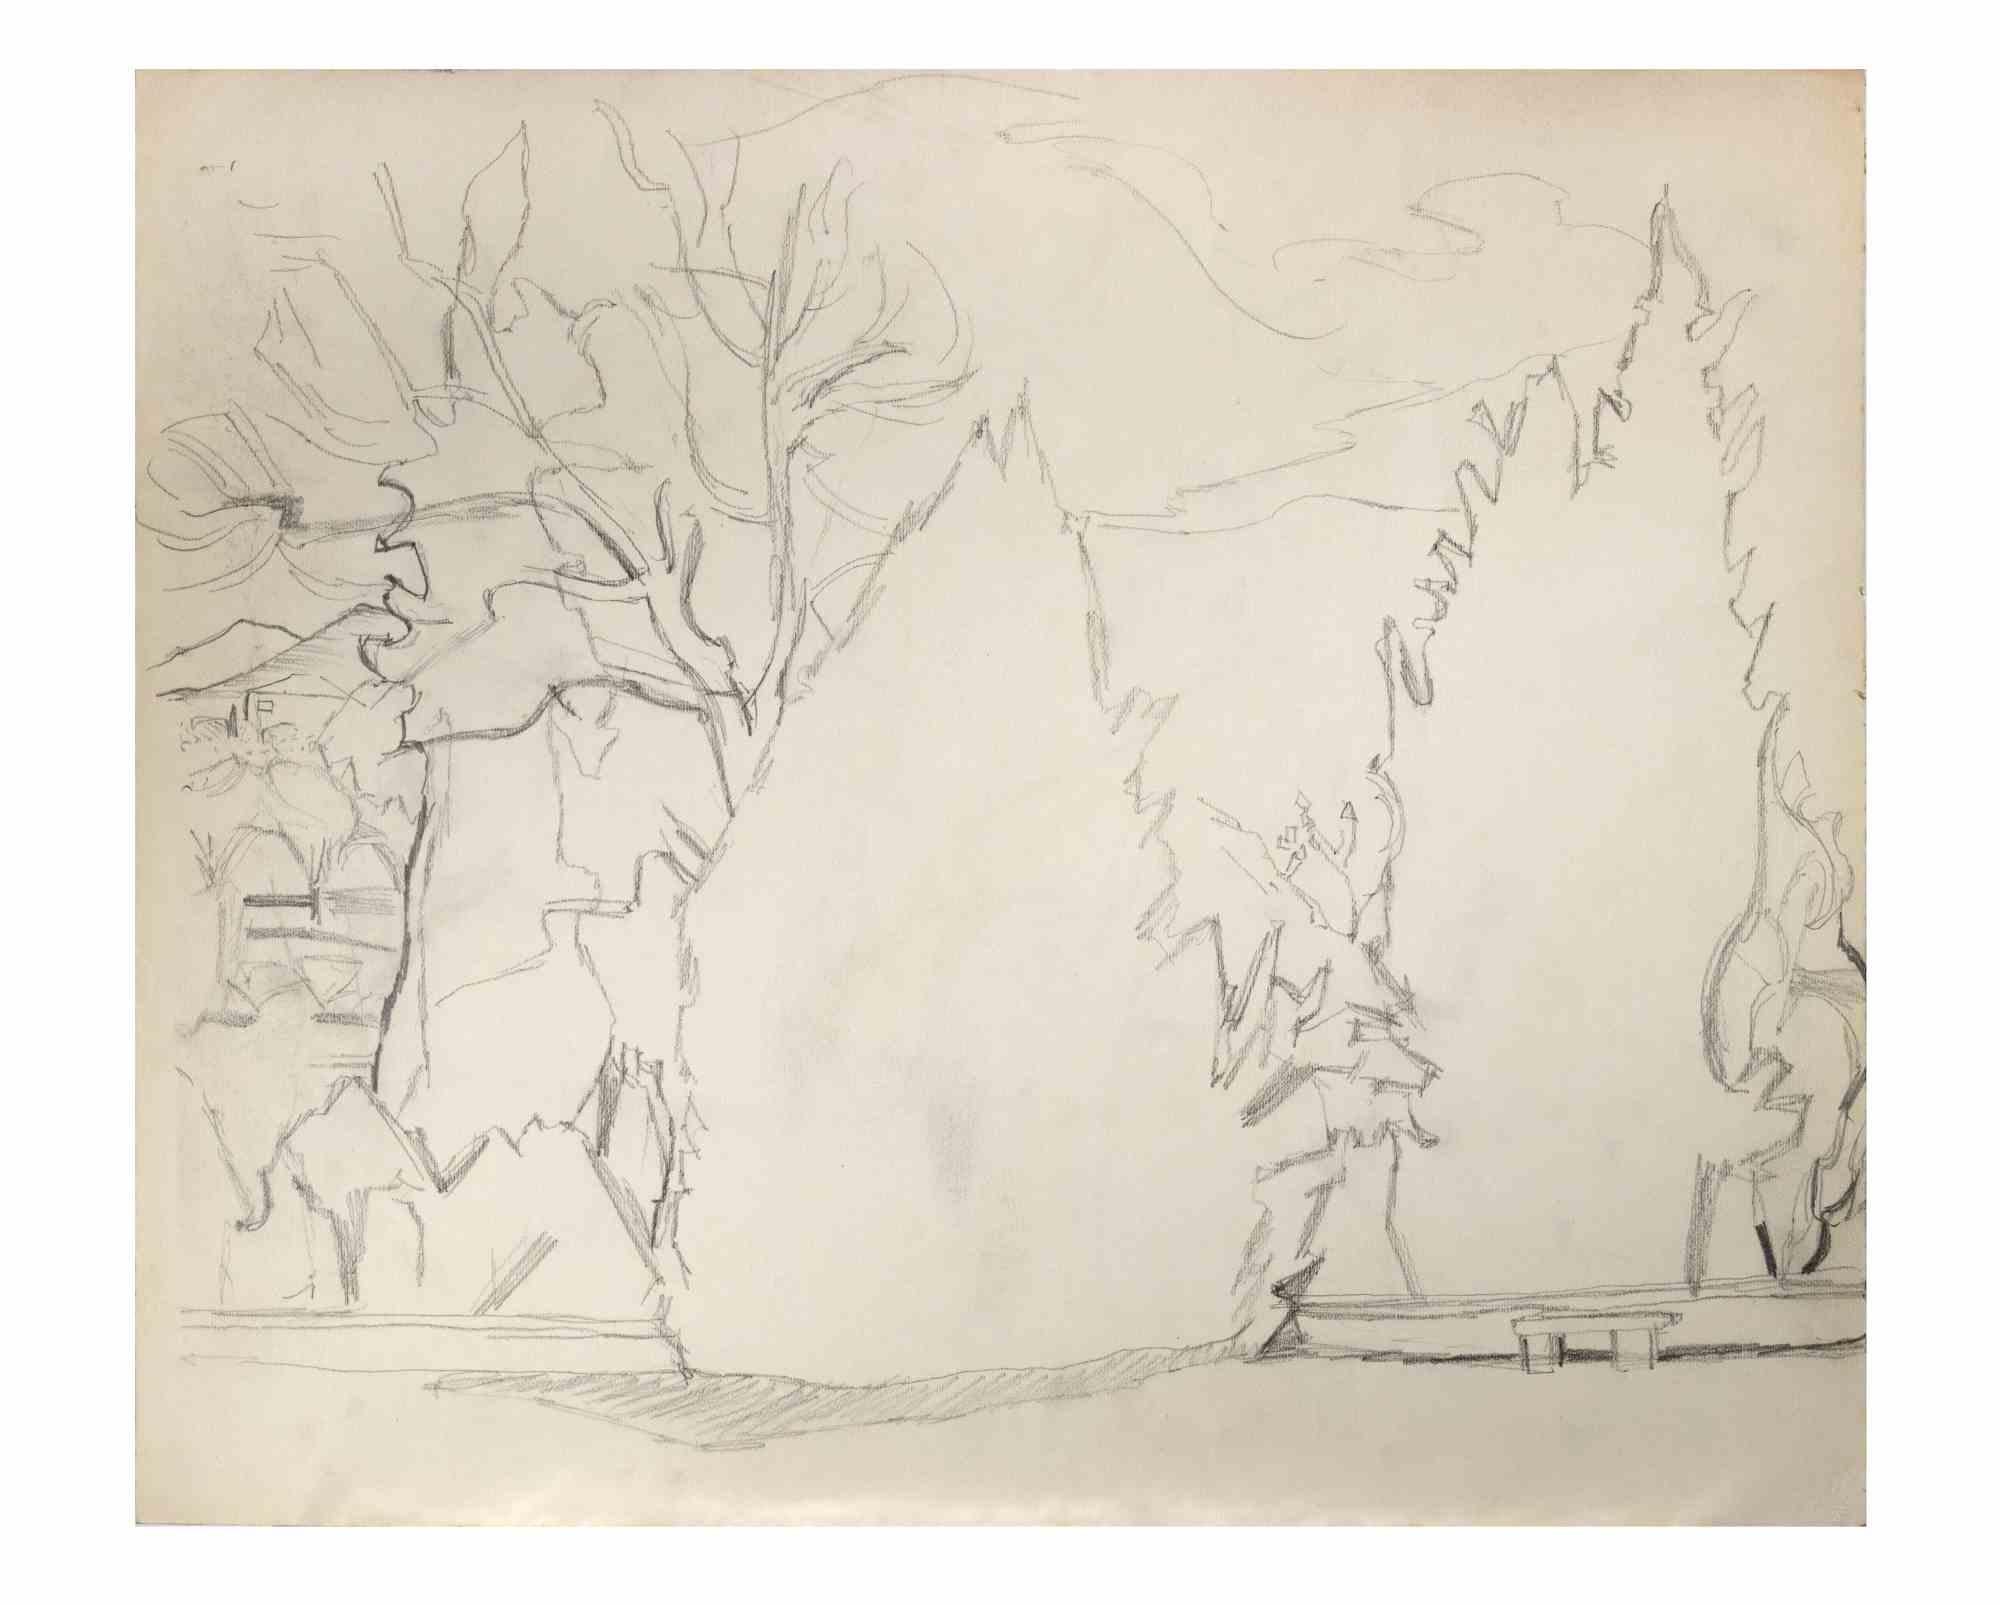 Paysage est un dessin au crayon réalisé par  Reynold Arnould  (Le Havre 1919 - Parigi 1980).

Bon état.

Pas de signature.

Reynold Arnould est né au Havre, en France, en 1919. Il a étudié à l'École des Beaux-Arts du Havre, et a remporté le Grand